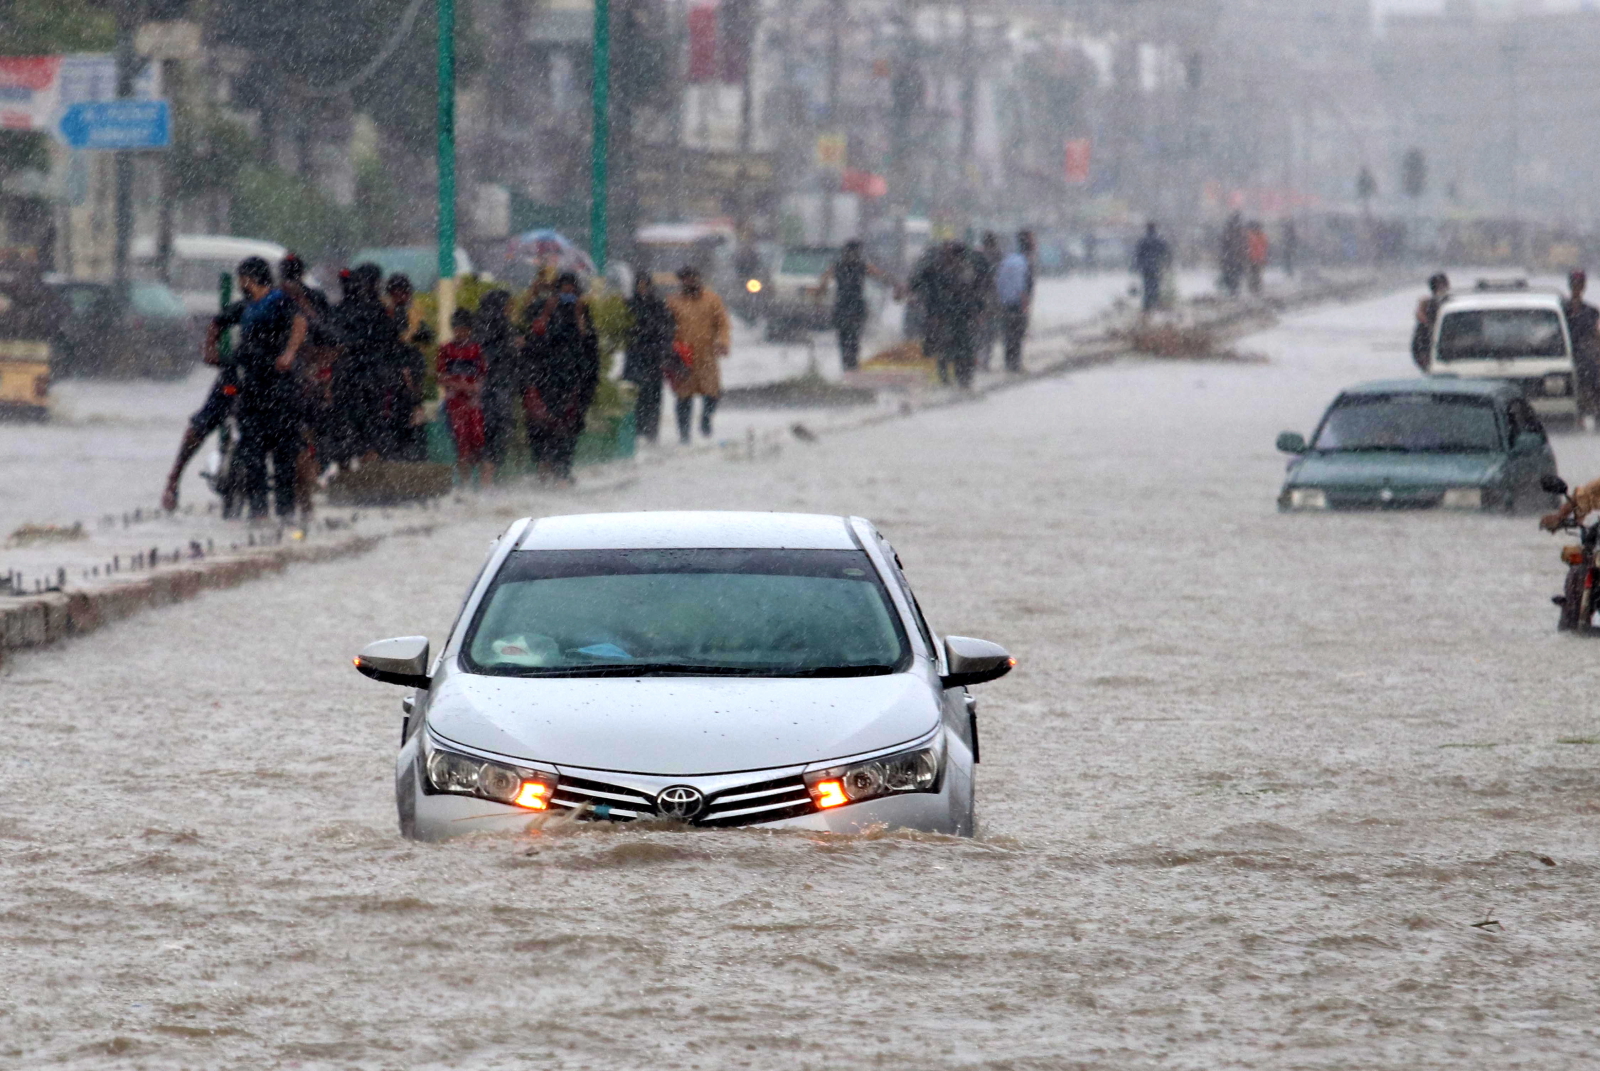 Powodzie w Pakistanie. fot. EPA/REHAN KHAN